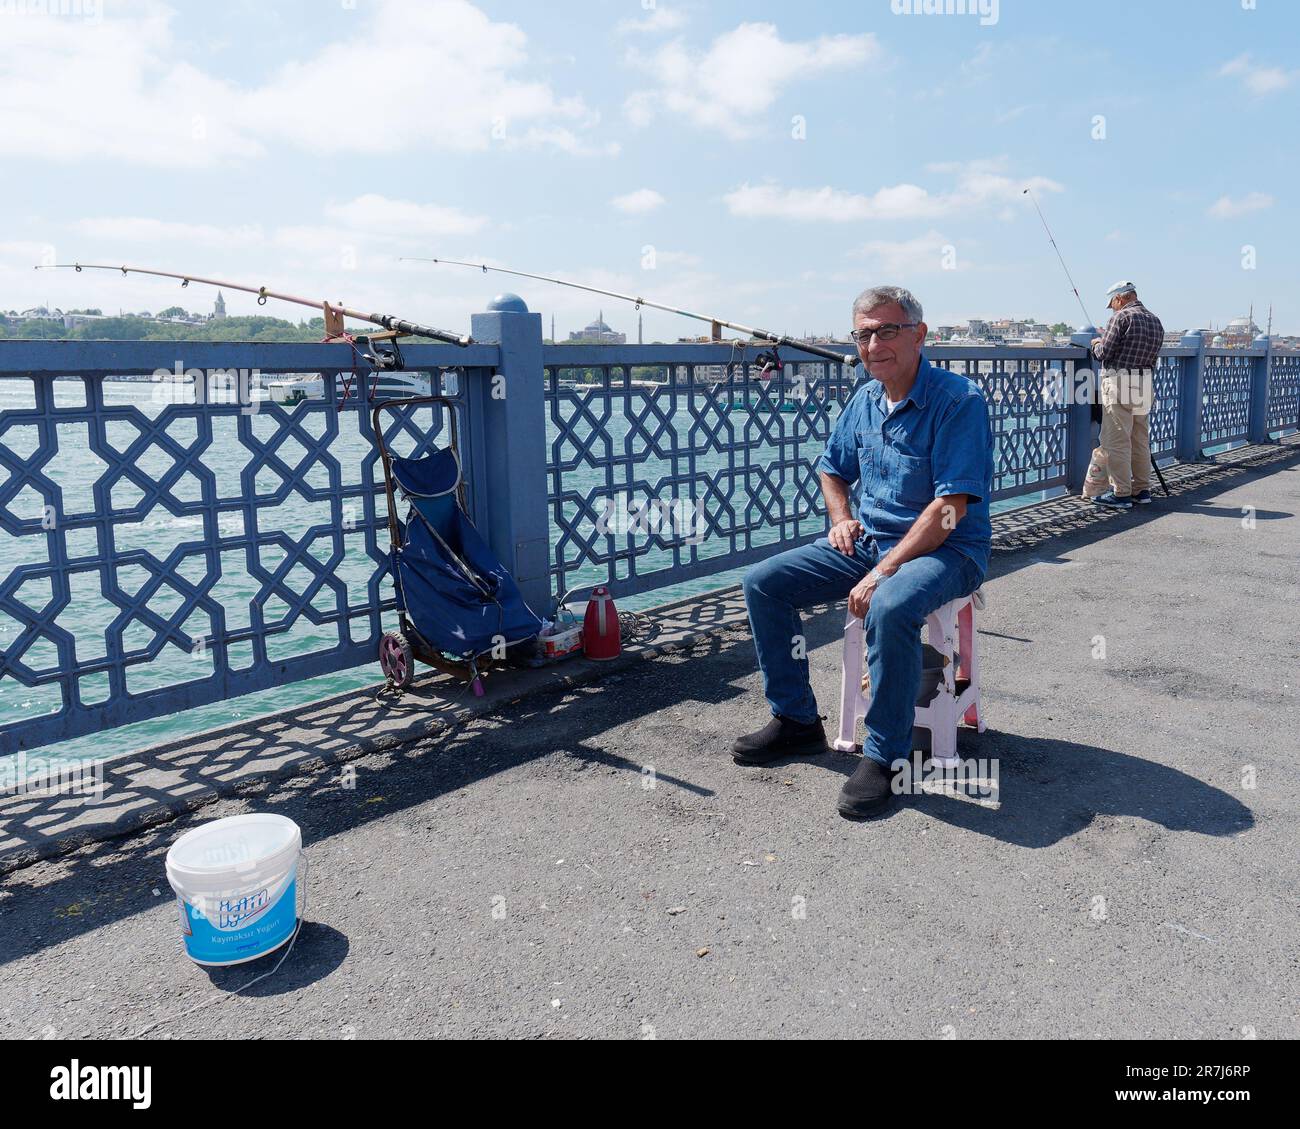 L'anziano isherman con gli occhiali sul ponte Galata si siede su una sedia per fare una pausa, Istanbul, Turchia Foto Stock